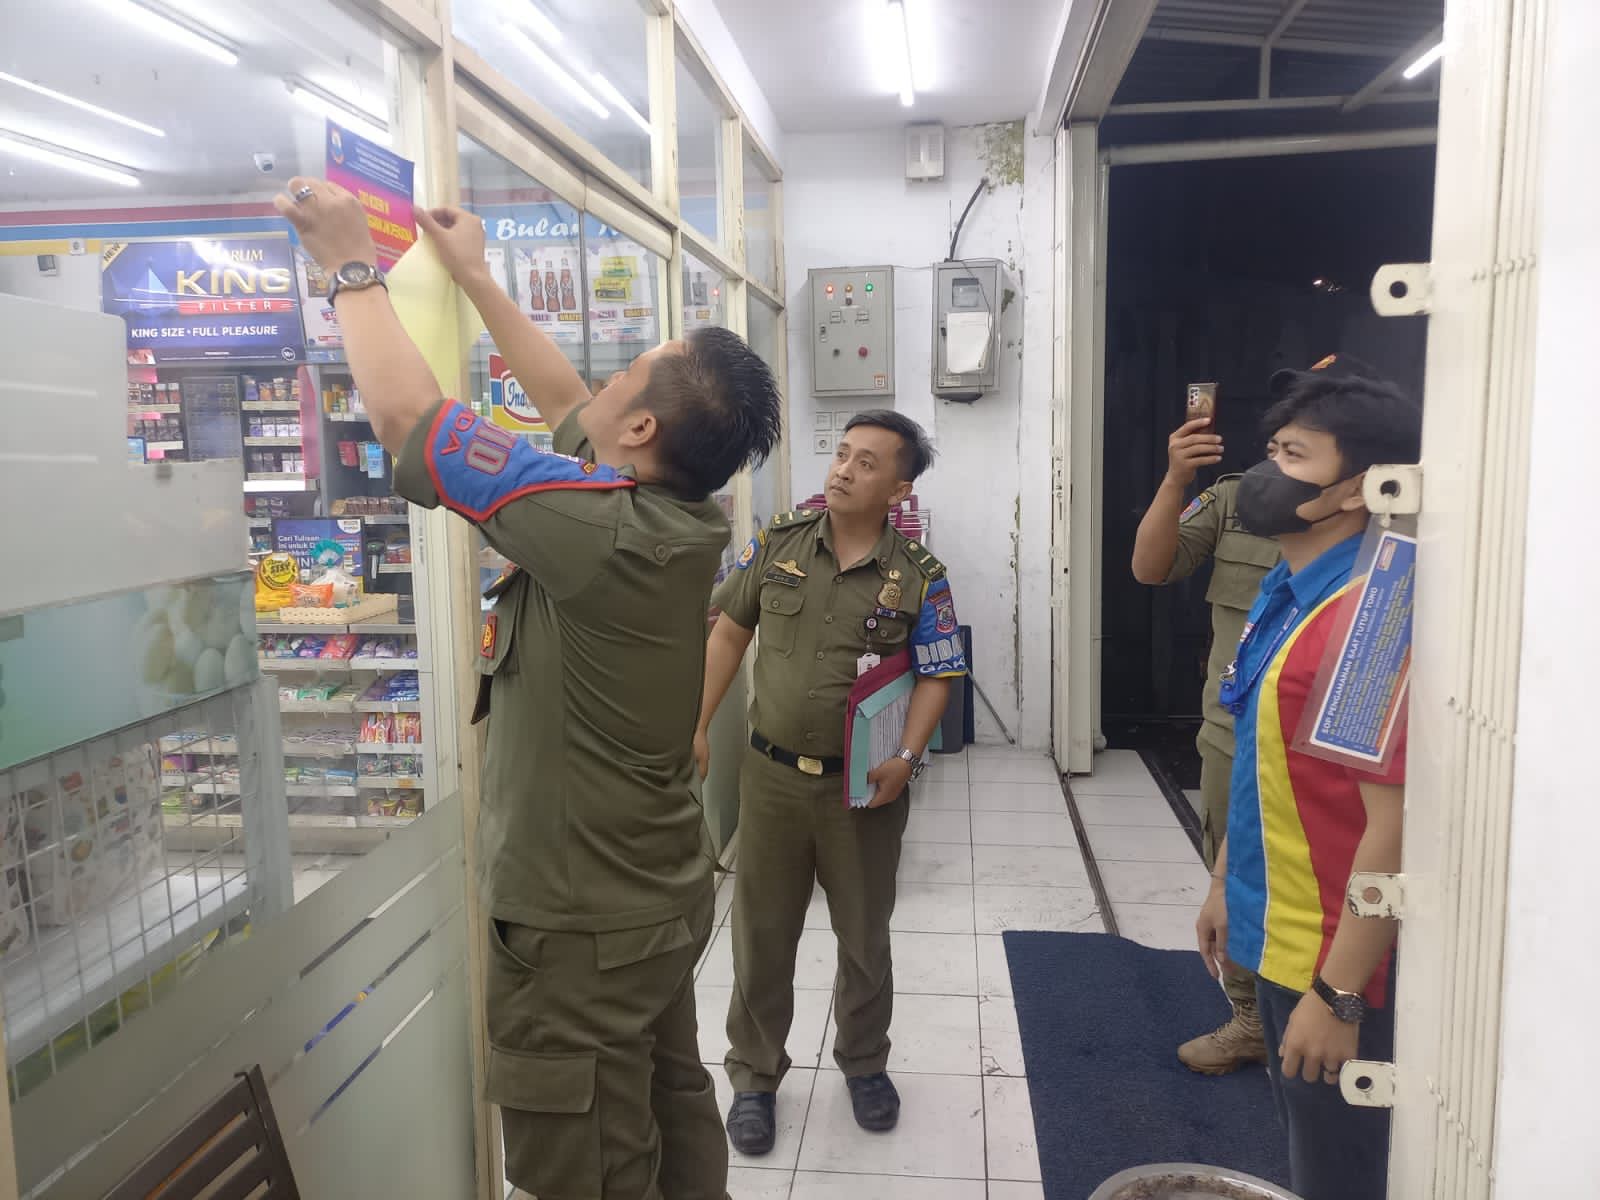 Satpol PP Pelototi Jam Operasional Minimarket, Banyak yang Langgar Perda